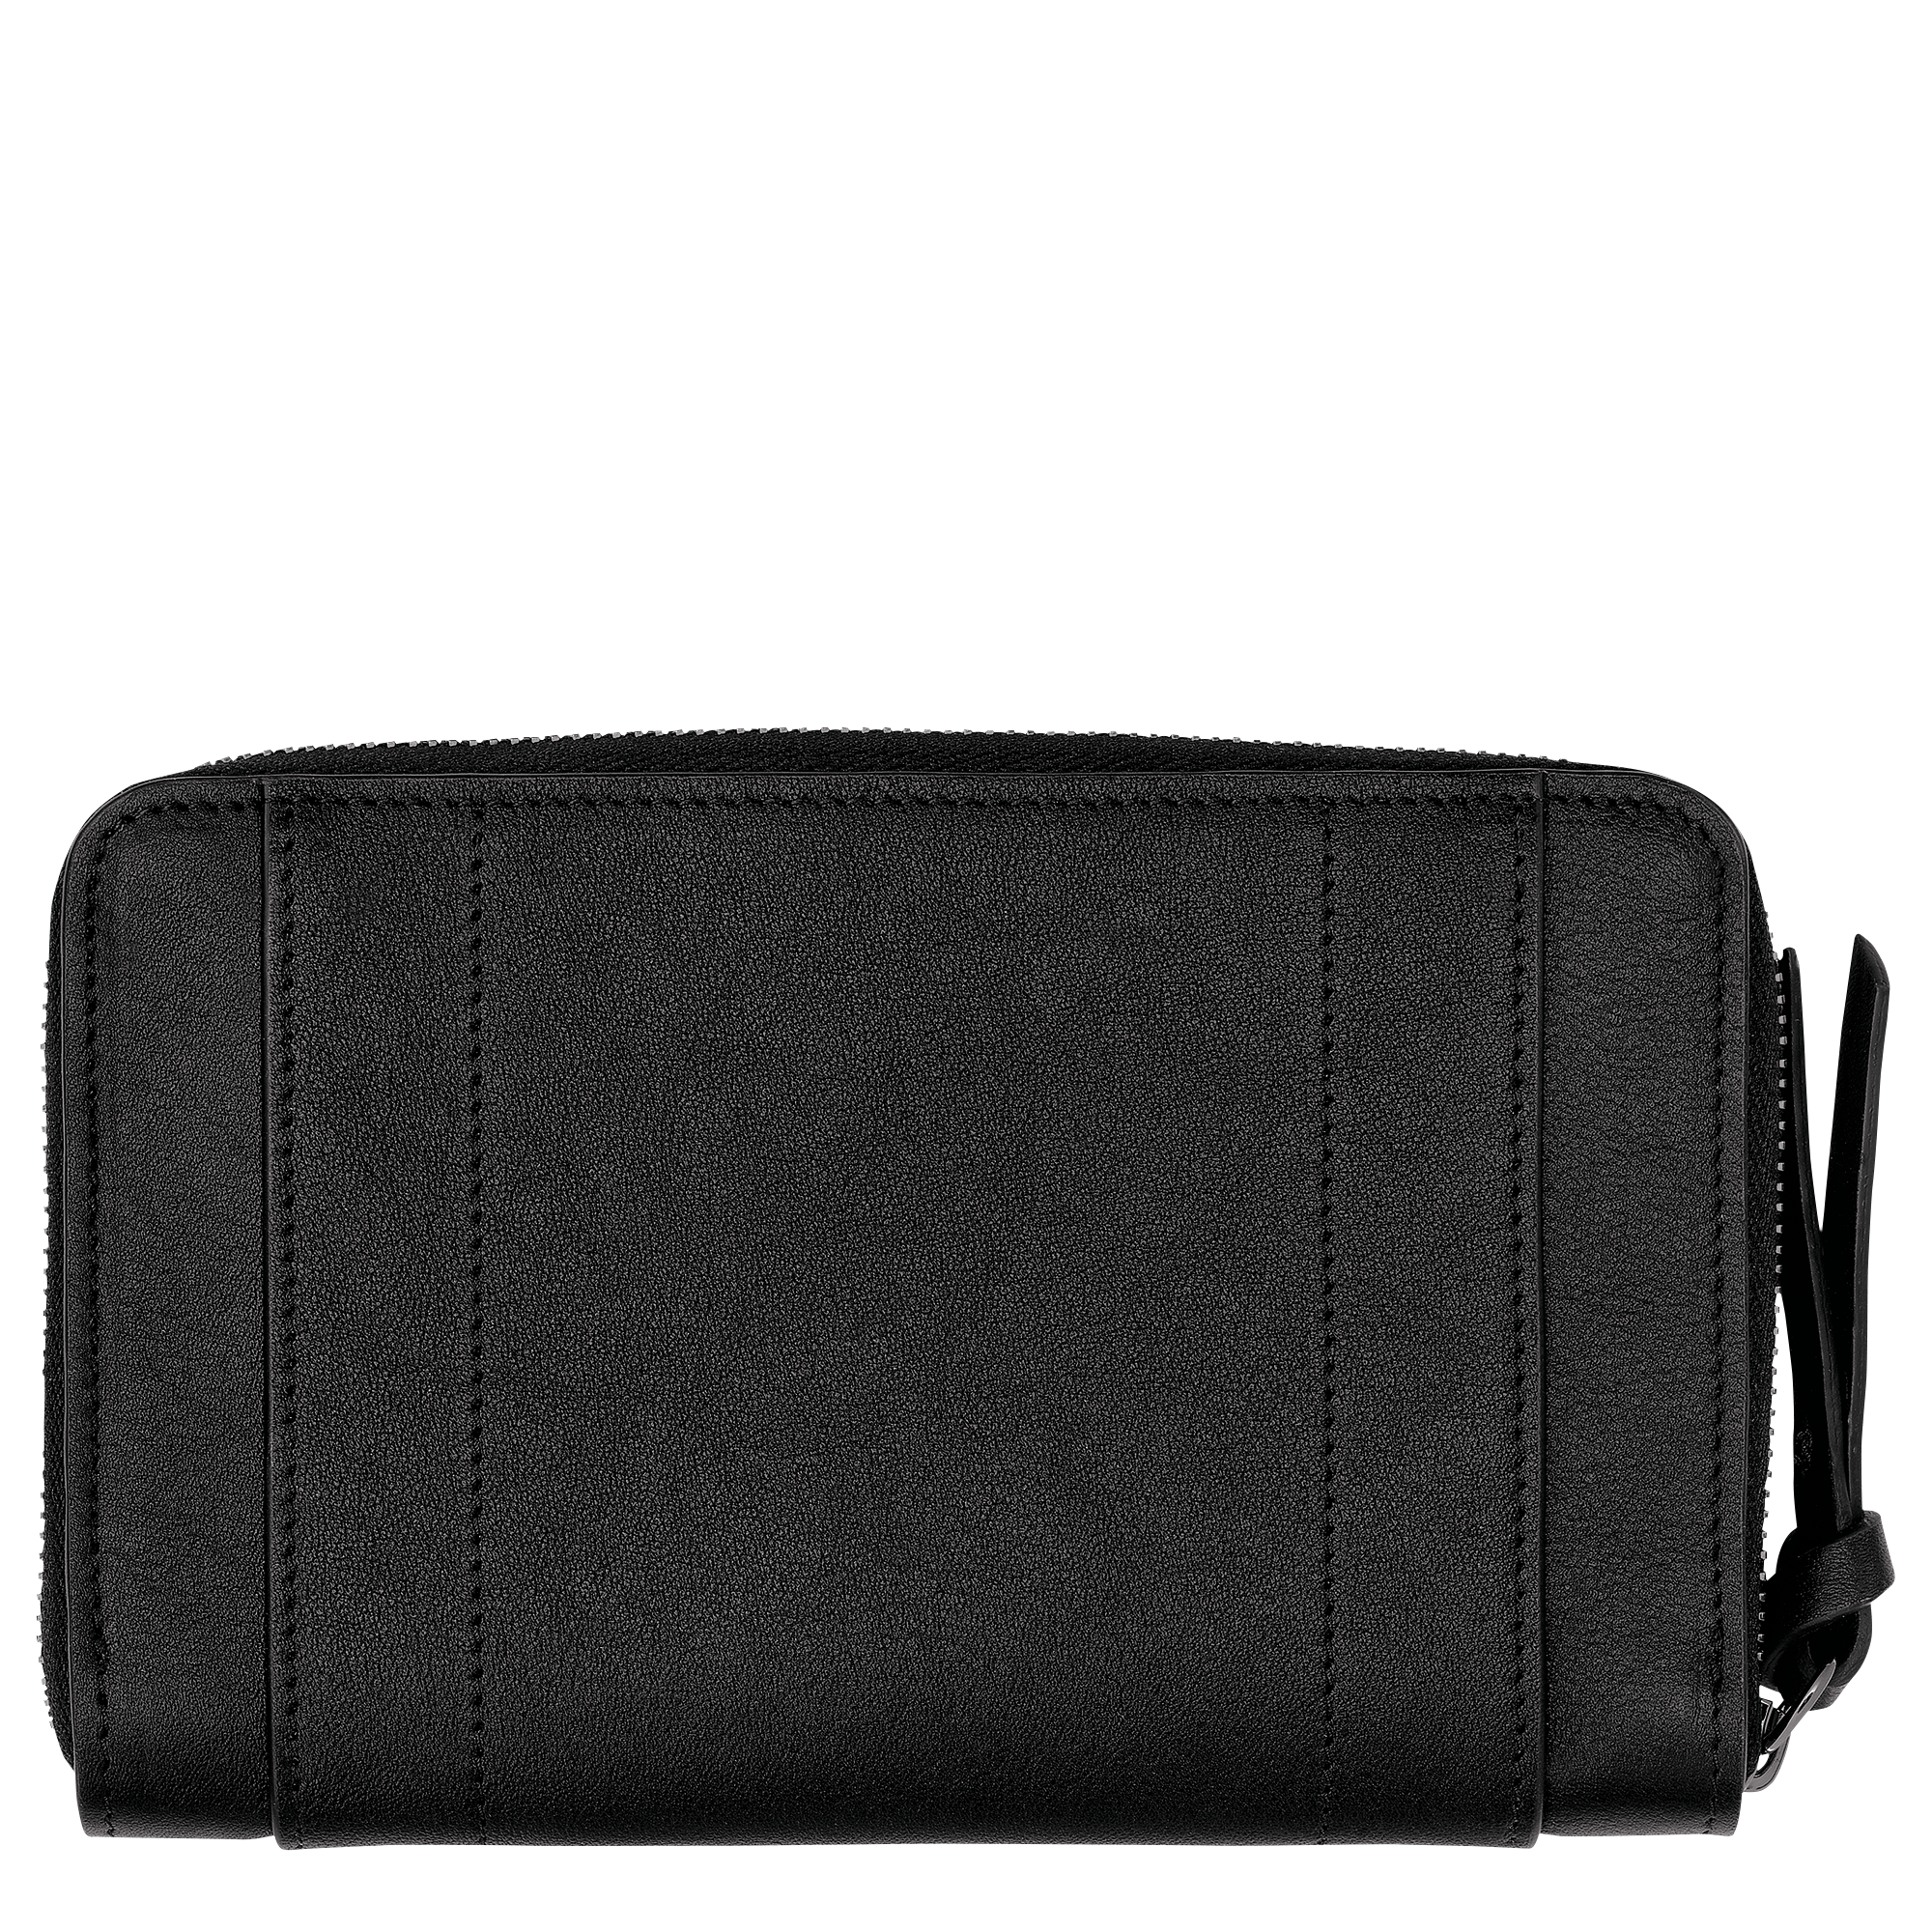 Longchamp 3D 錢包, 黑色